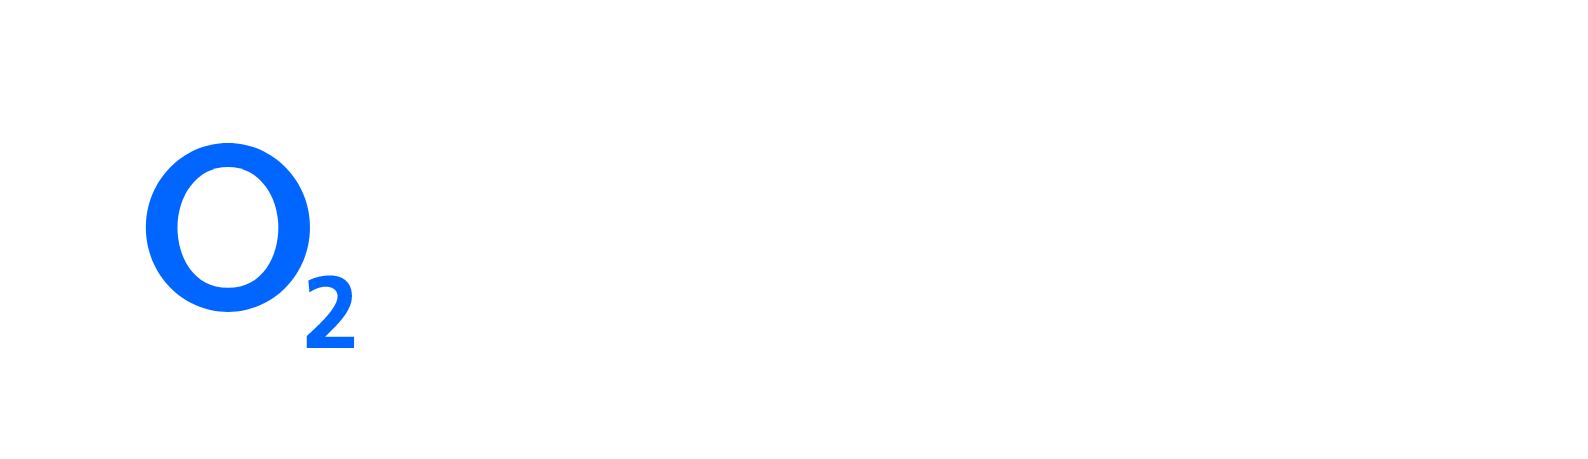 Telefónica Deutschland (O2) logo large for dark backgrounds (transparent PNG)